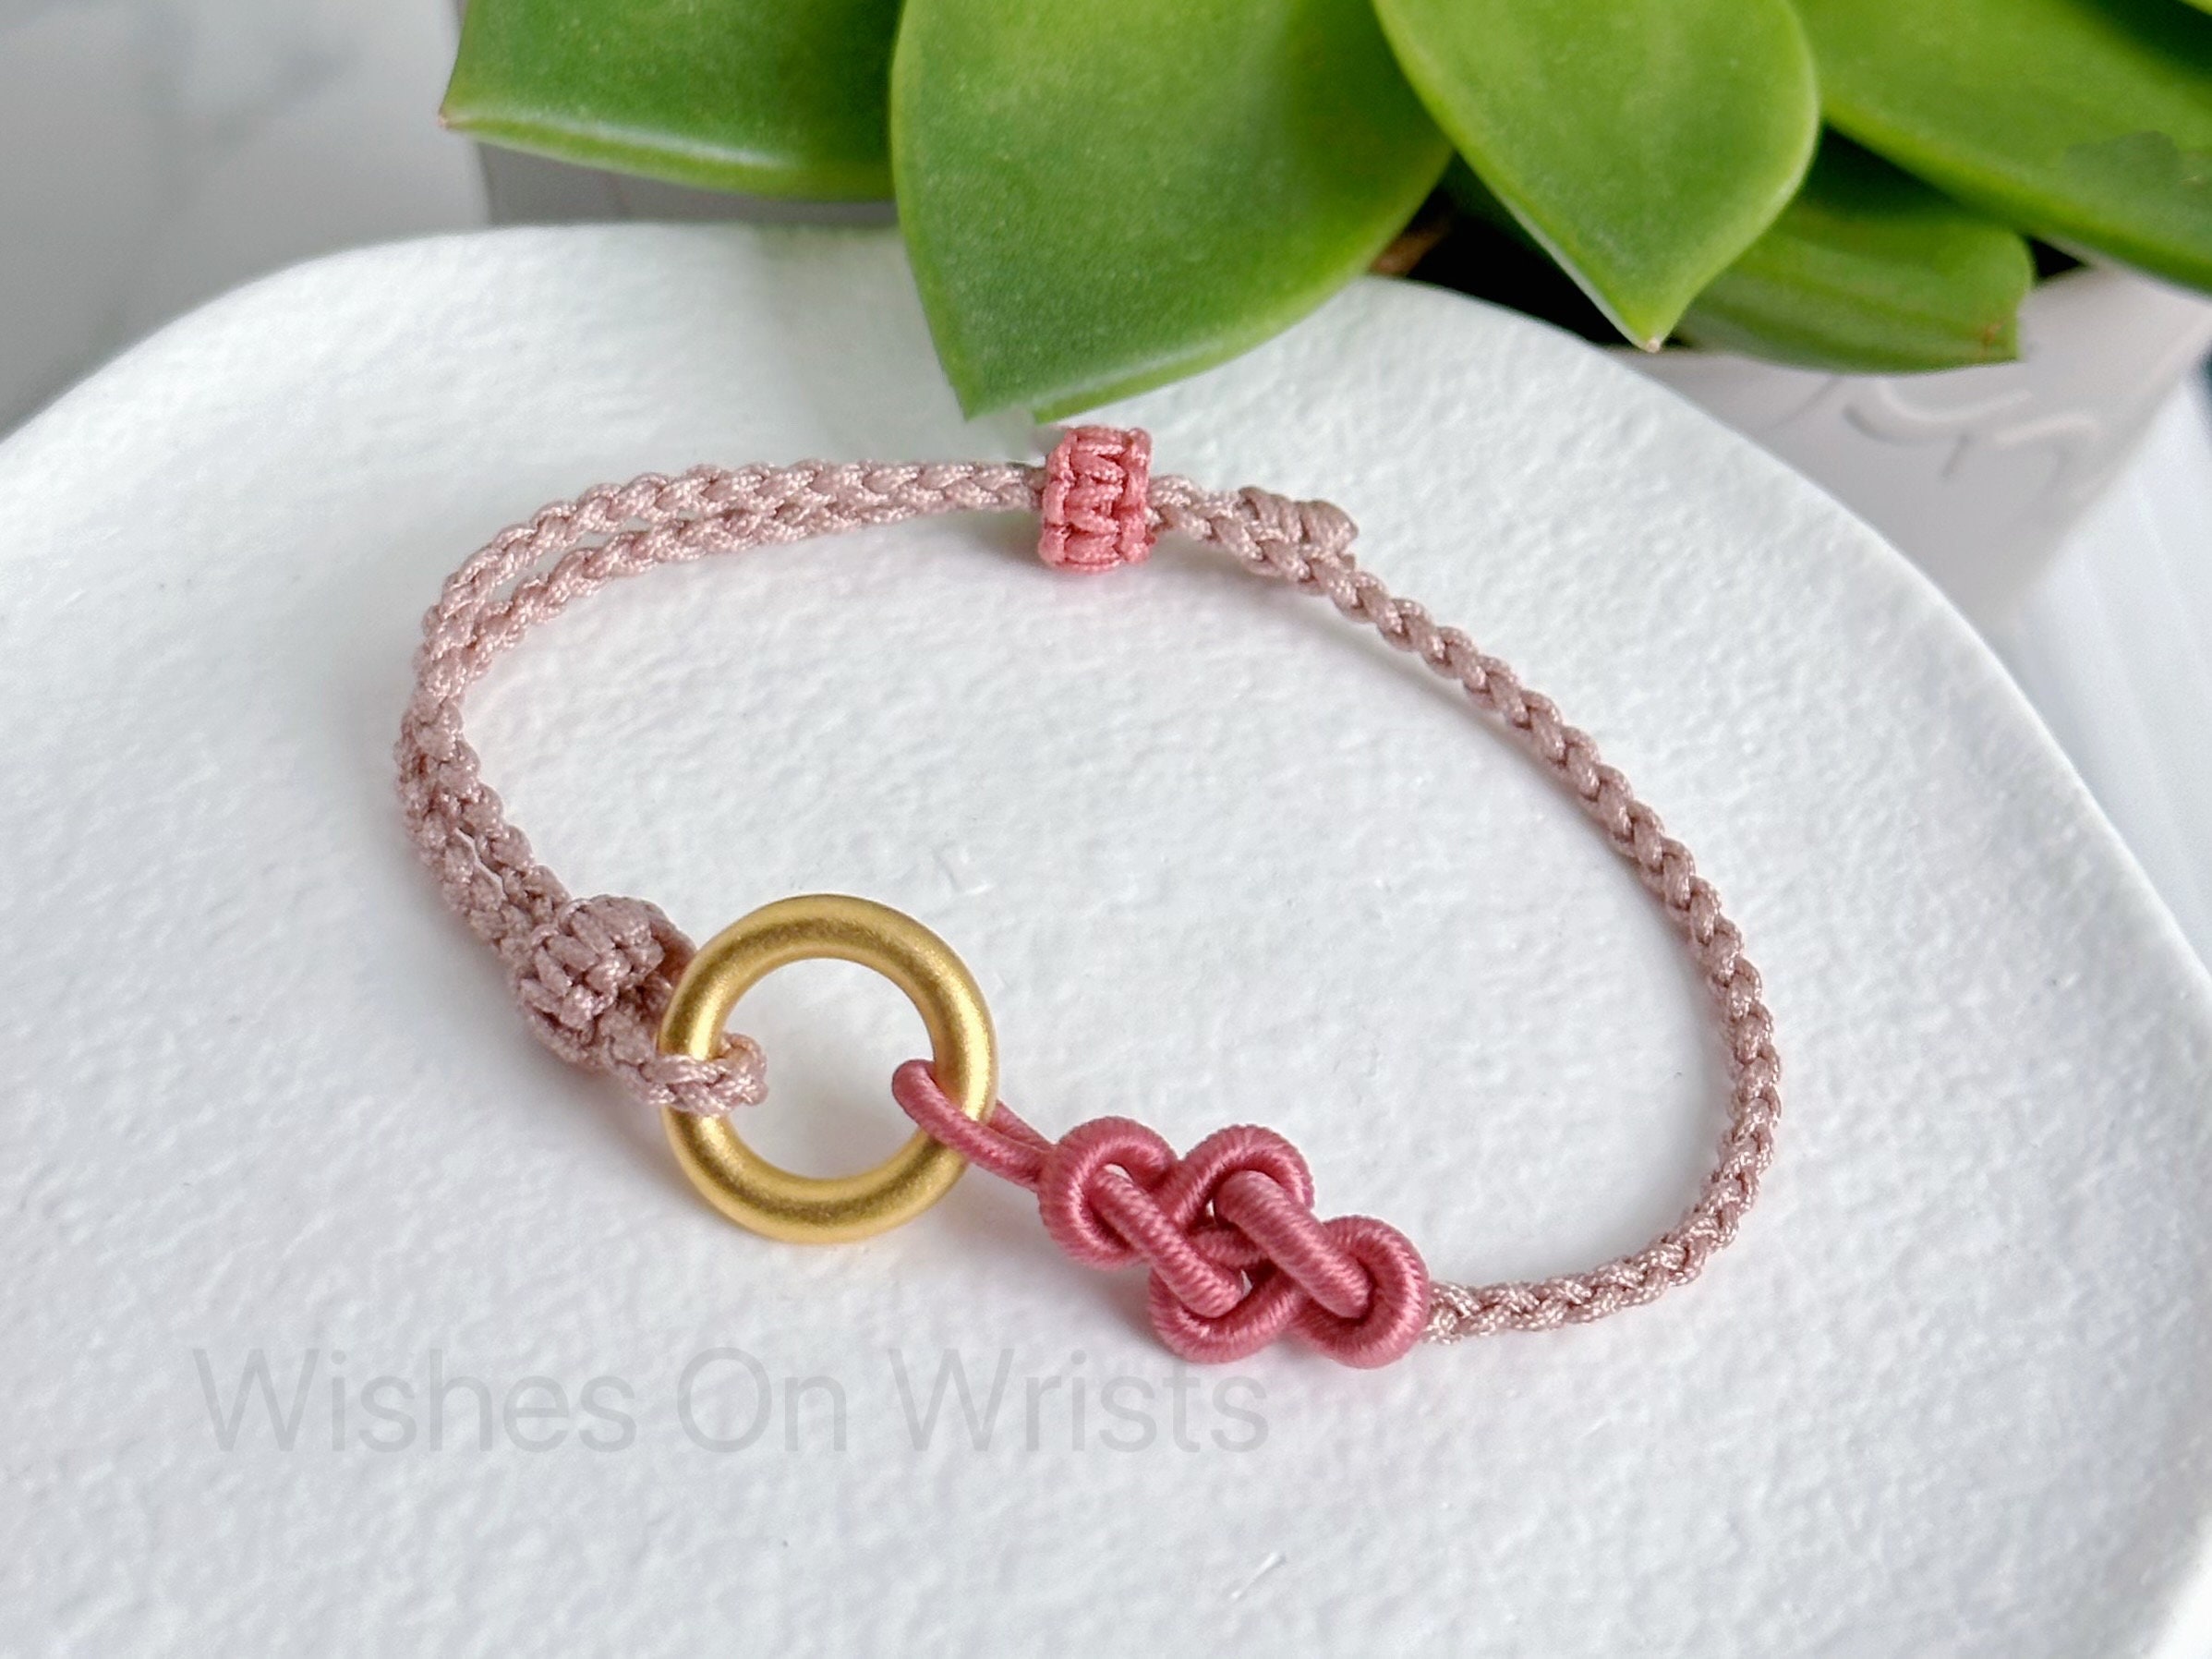 Red string bracelet , Kabbalah bracelet, woven braided adjustable bracelet  - men women st030